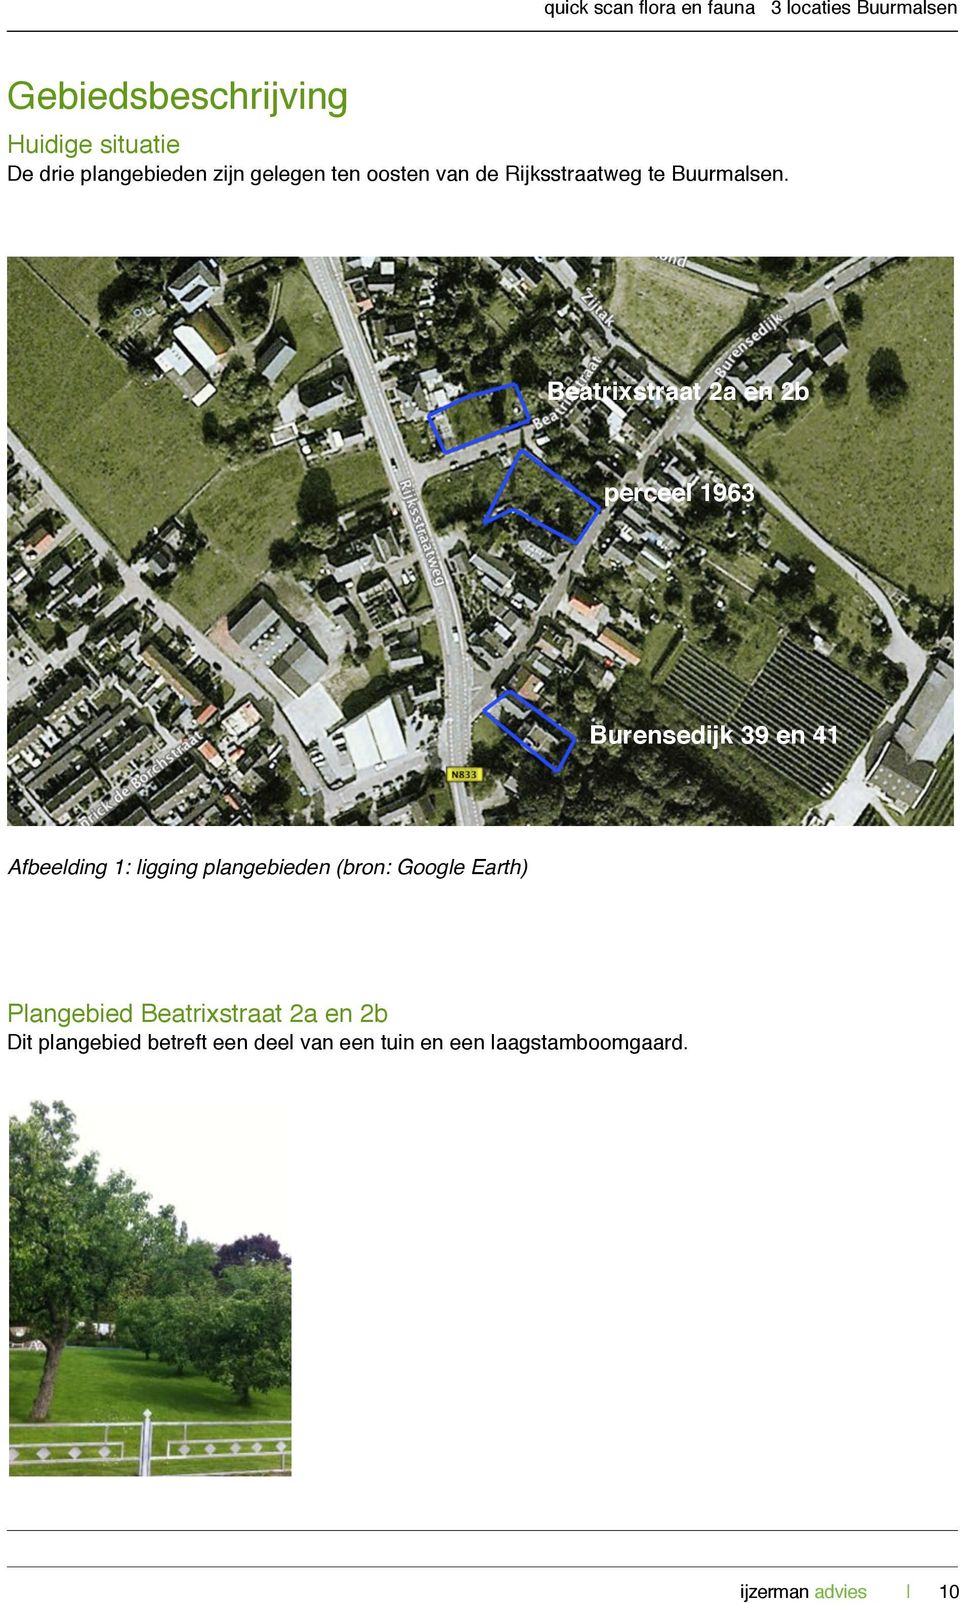 Beatrixstraat 2a en 2b perceel 1963 Burensedijk 39 en 41 Afbeelding 1: ligging plangebieden (bron: